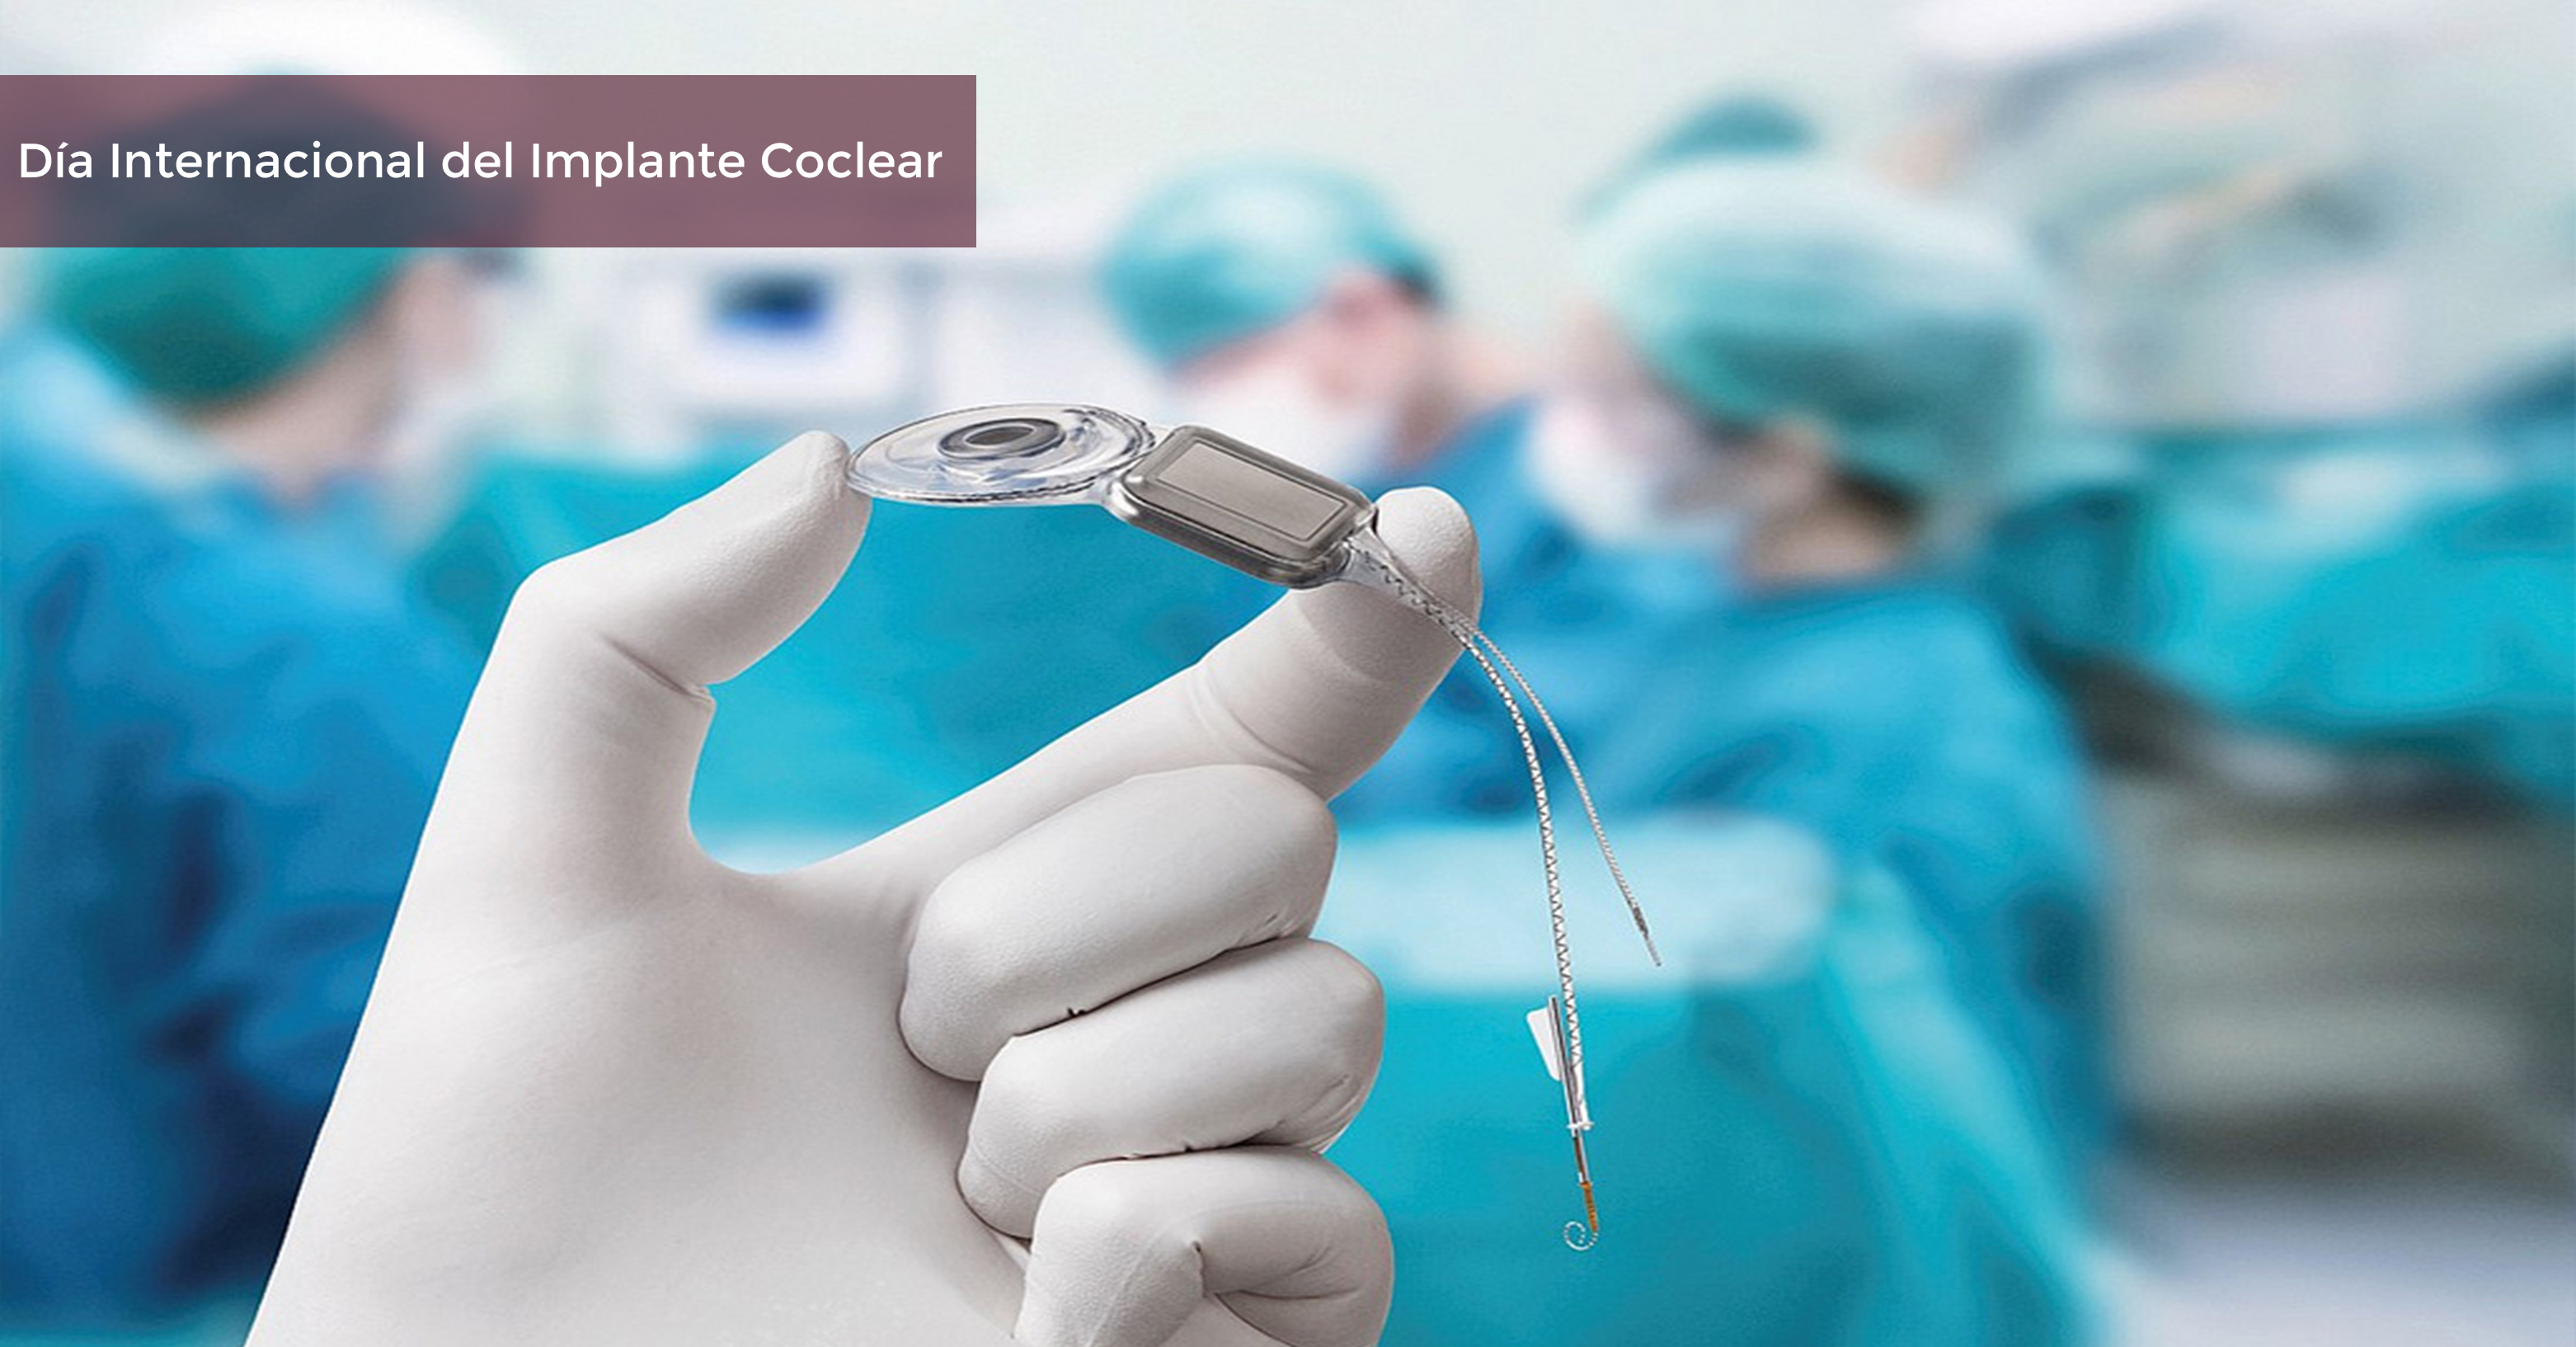 Dispositivo de Implante coclear, previo a la cirugía